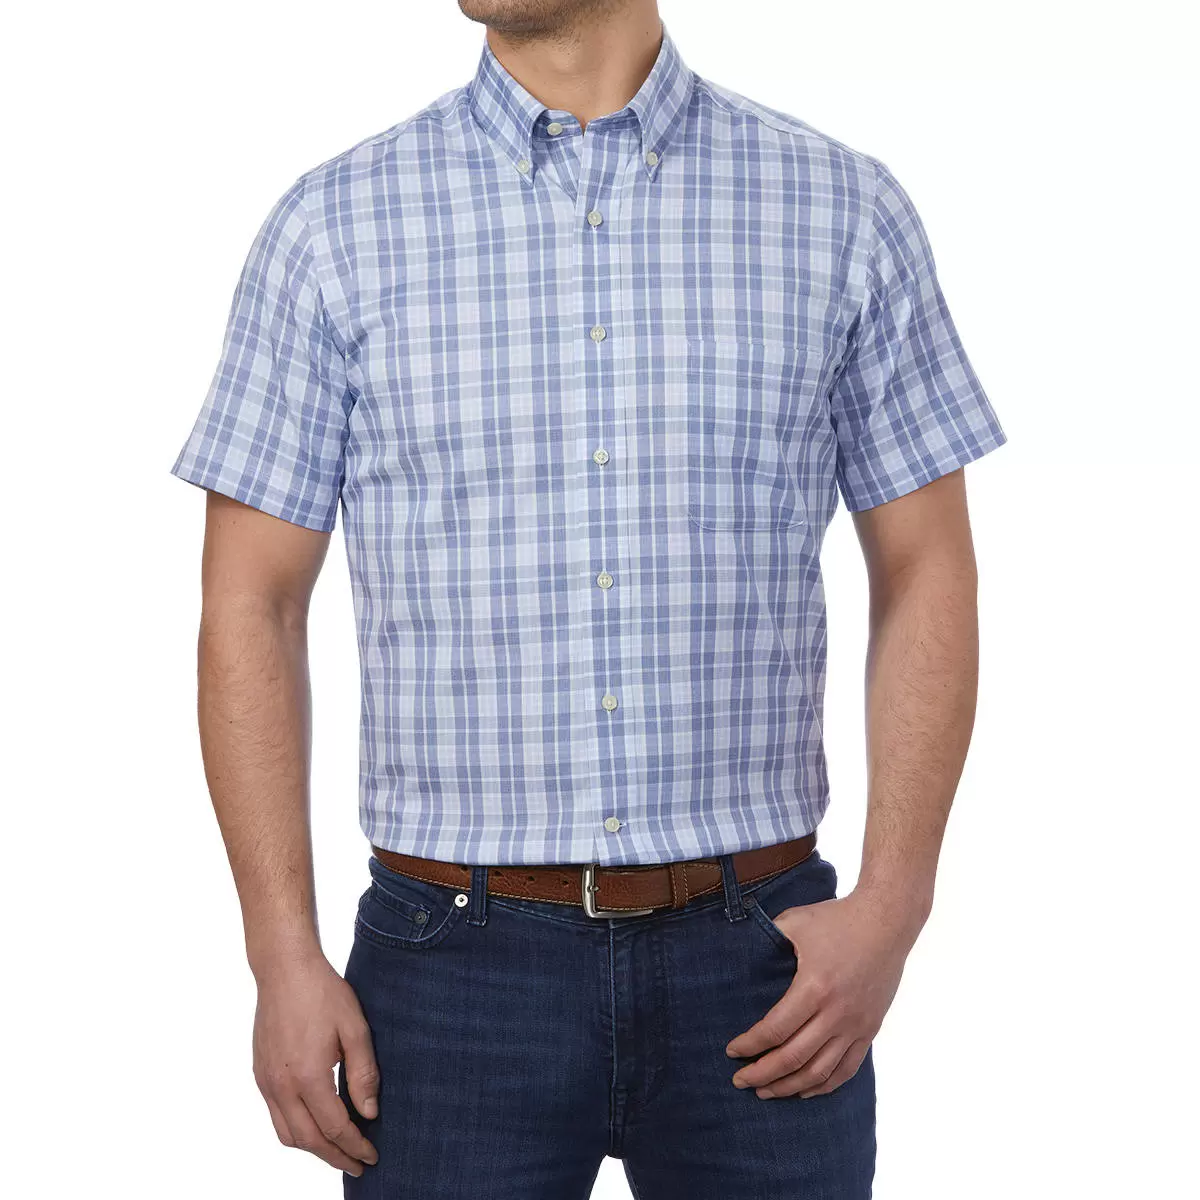 Kirkland Signature 科克蘭 男短袖鈕扣領免燙彈性襯衫 深藍淺藍格紋 L